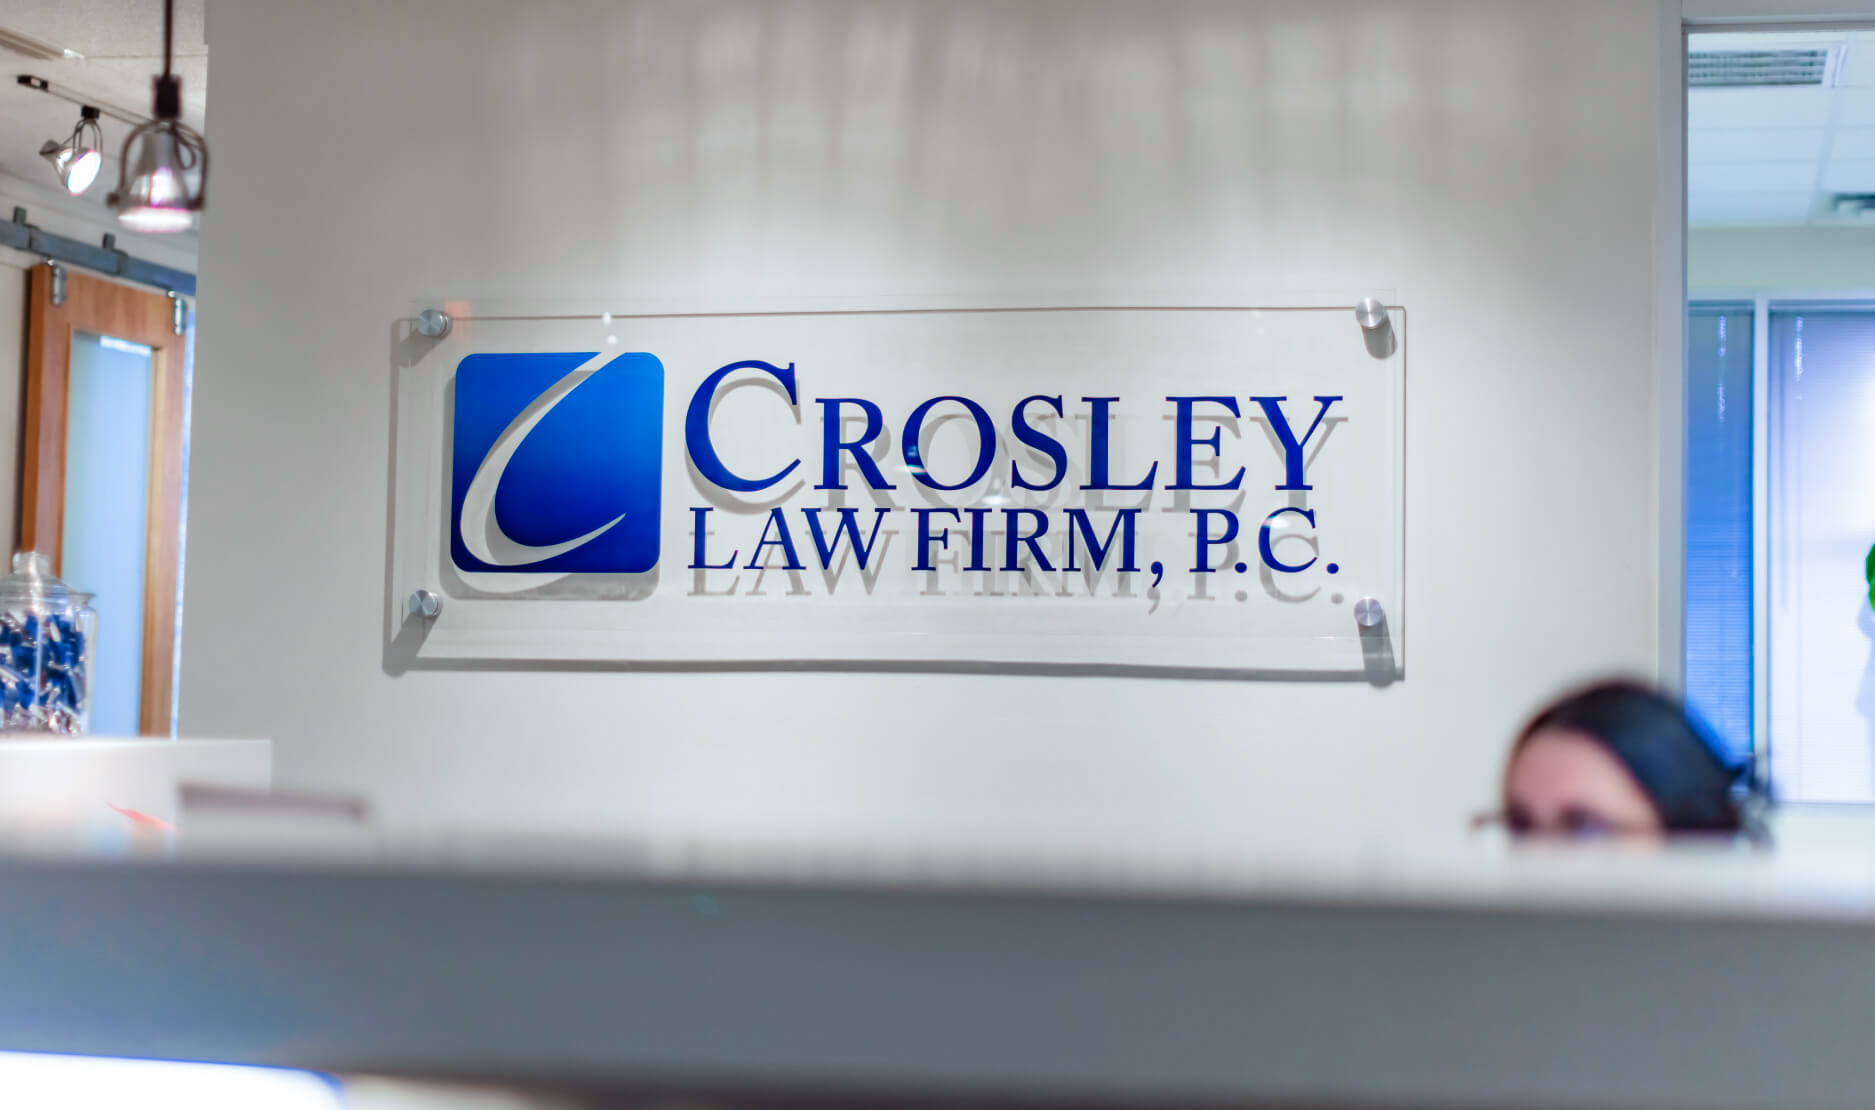 Señalización en vidrio esmerilado de "Crosley Law Firm, P.C." con fondo de oficina.